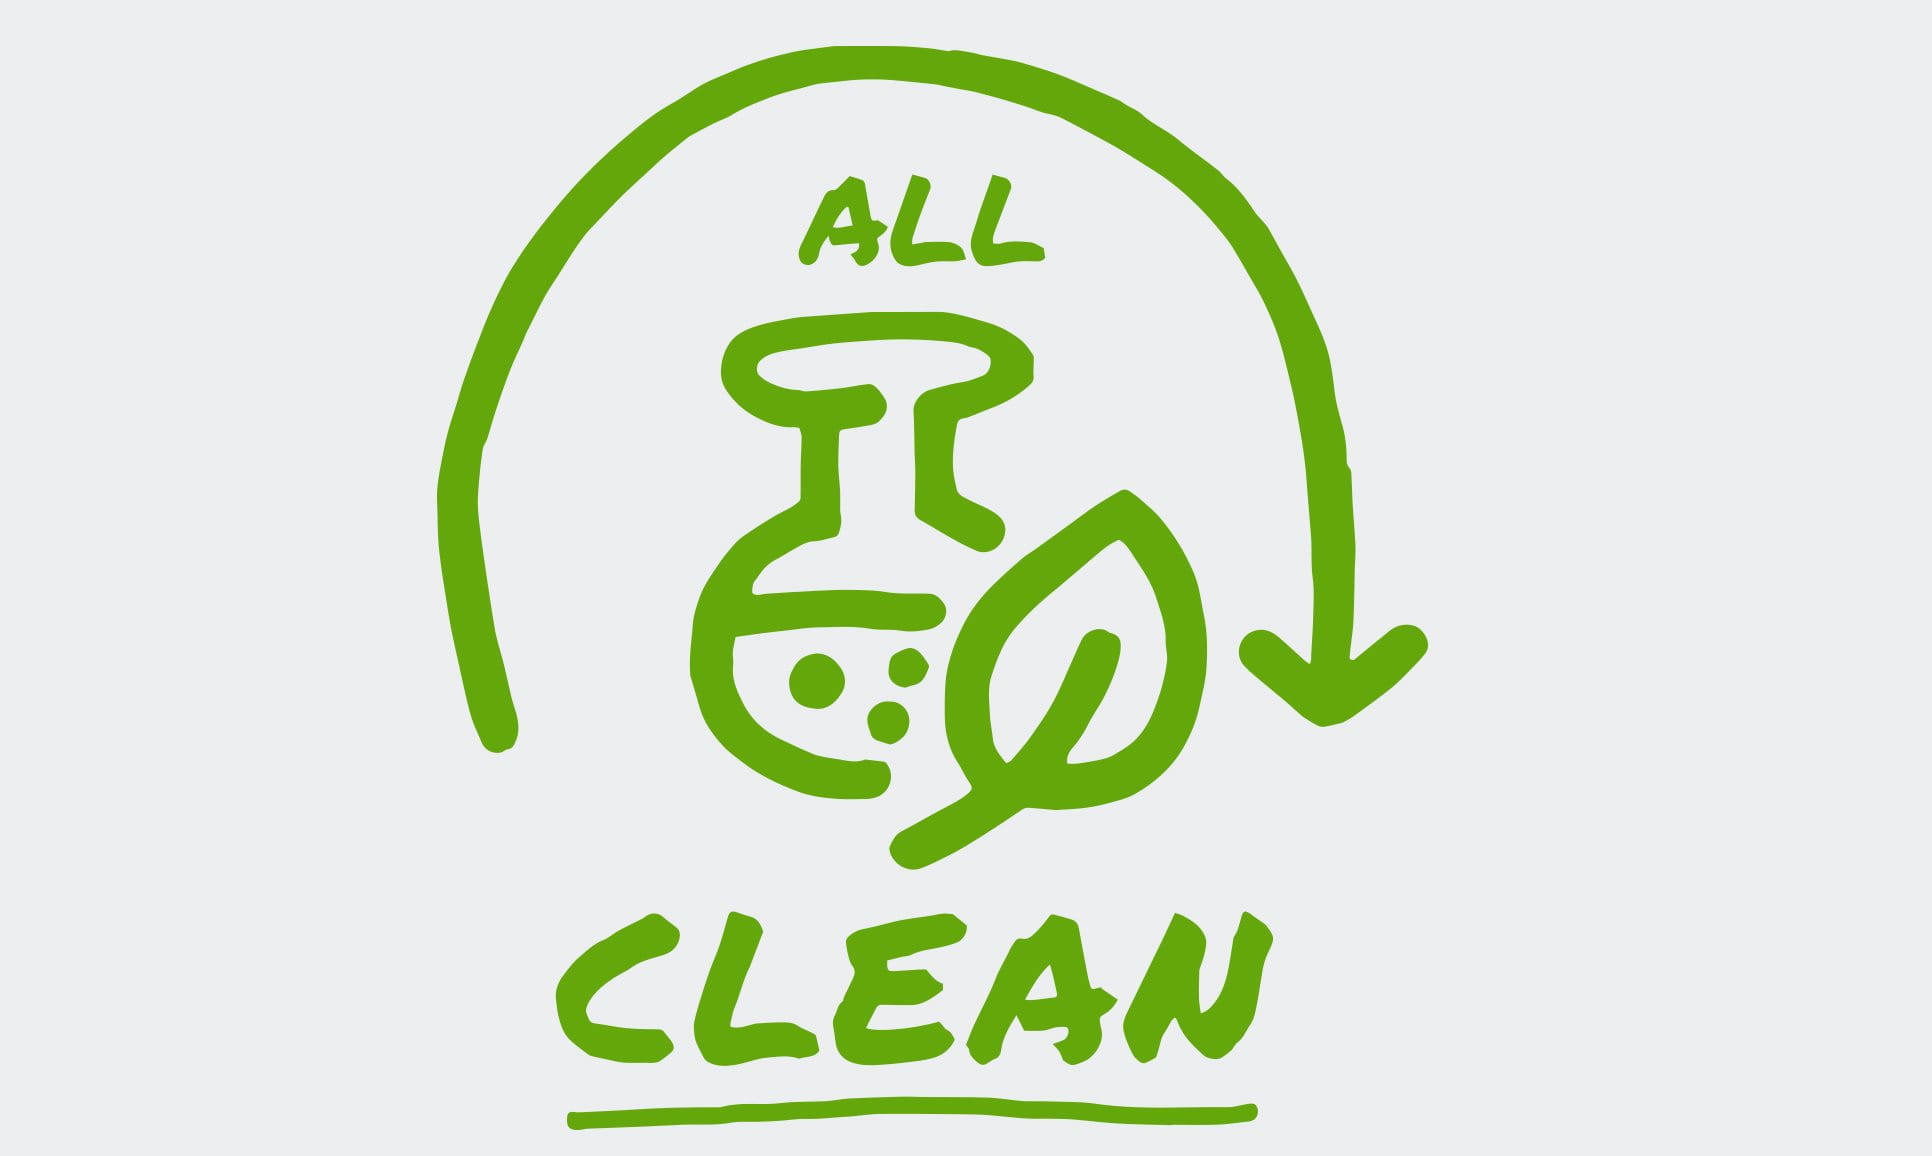 En illustrerad ikon visar en pil som bildar en halvcirkel runt orden "All Clean", som visas tillsammans med ett löv och en bägare.